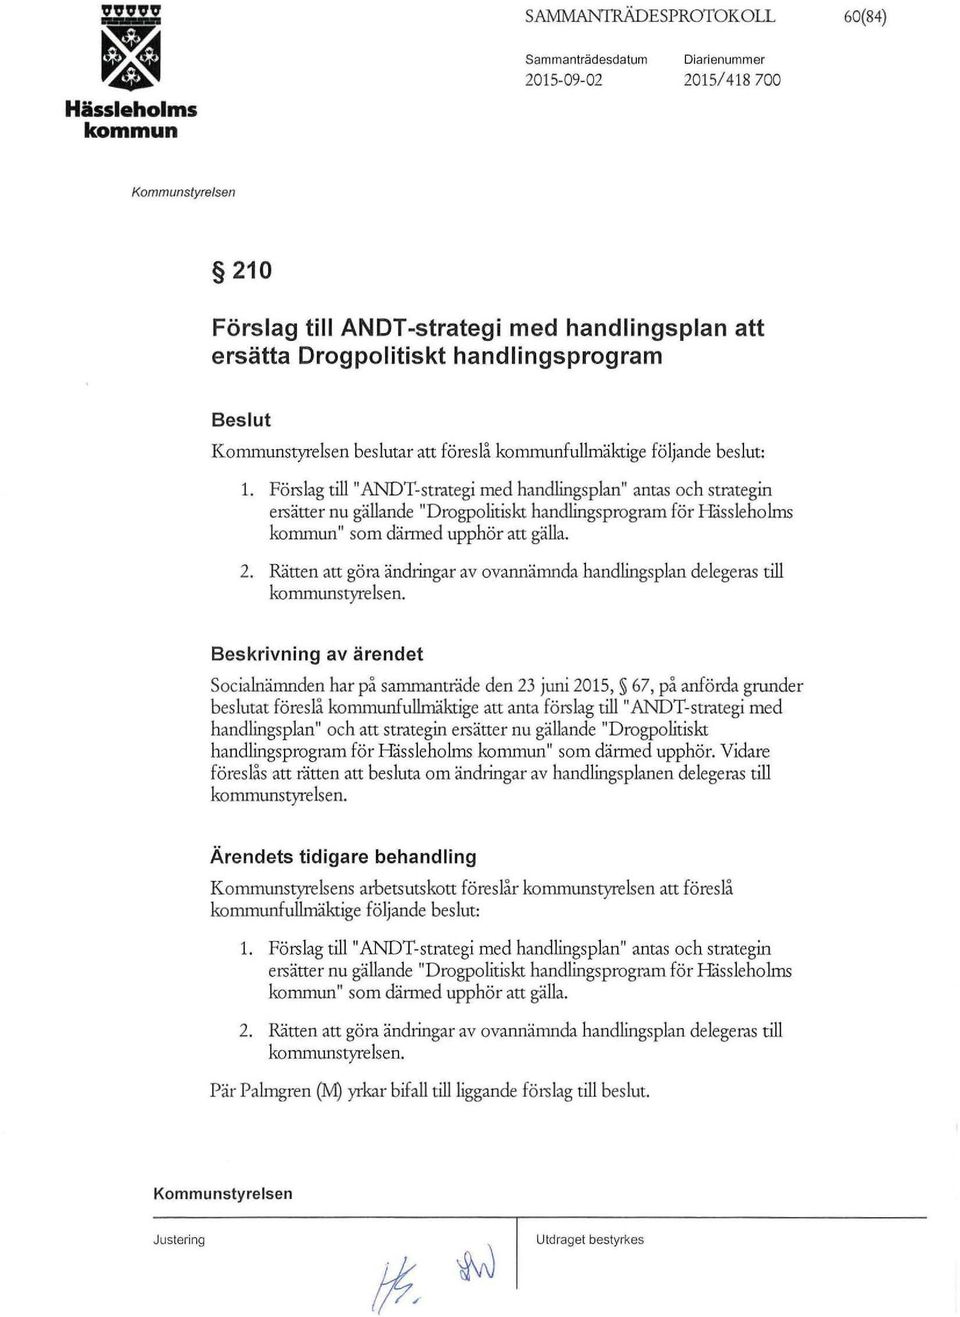 Förslag till "ANDT-strategi med handlingsplan" antas och strategin ersätter nu gällande "Drogpolitiskt handlingsprogram för Hässleholms kommun" som därmed upphör att gälla. 2.